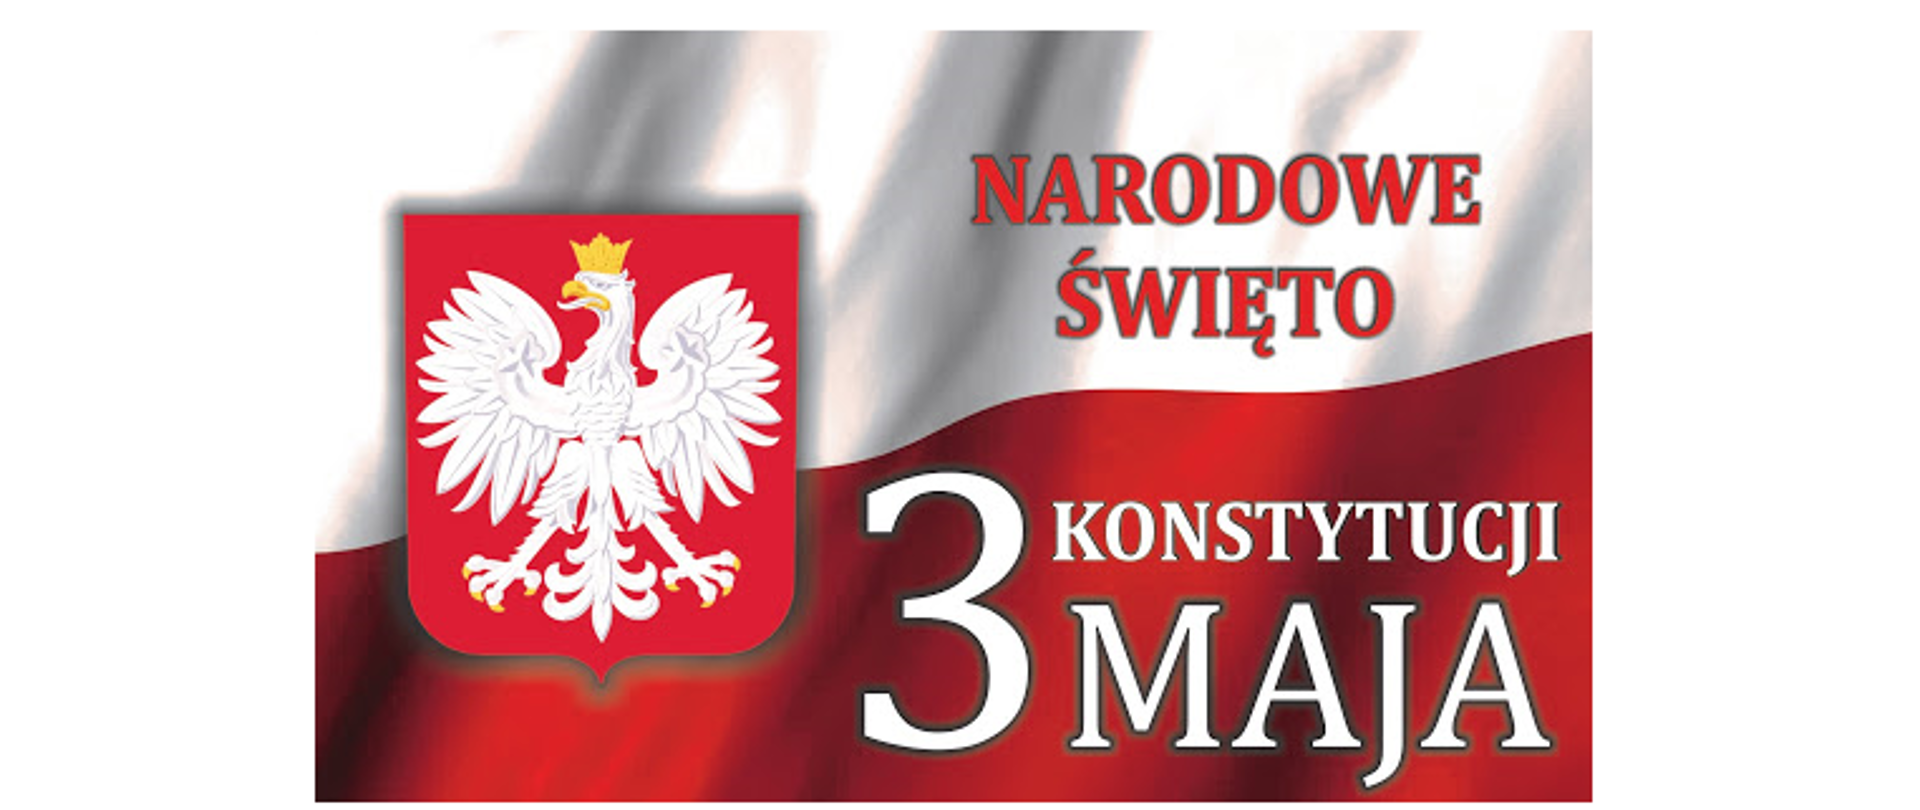 Narodowe Święto Konstytucji 3 Maja - Gmina Brańszczyk - Portal gov.pl